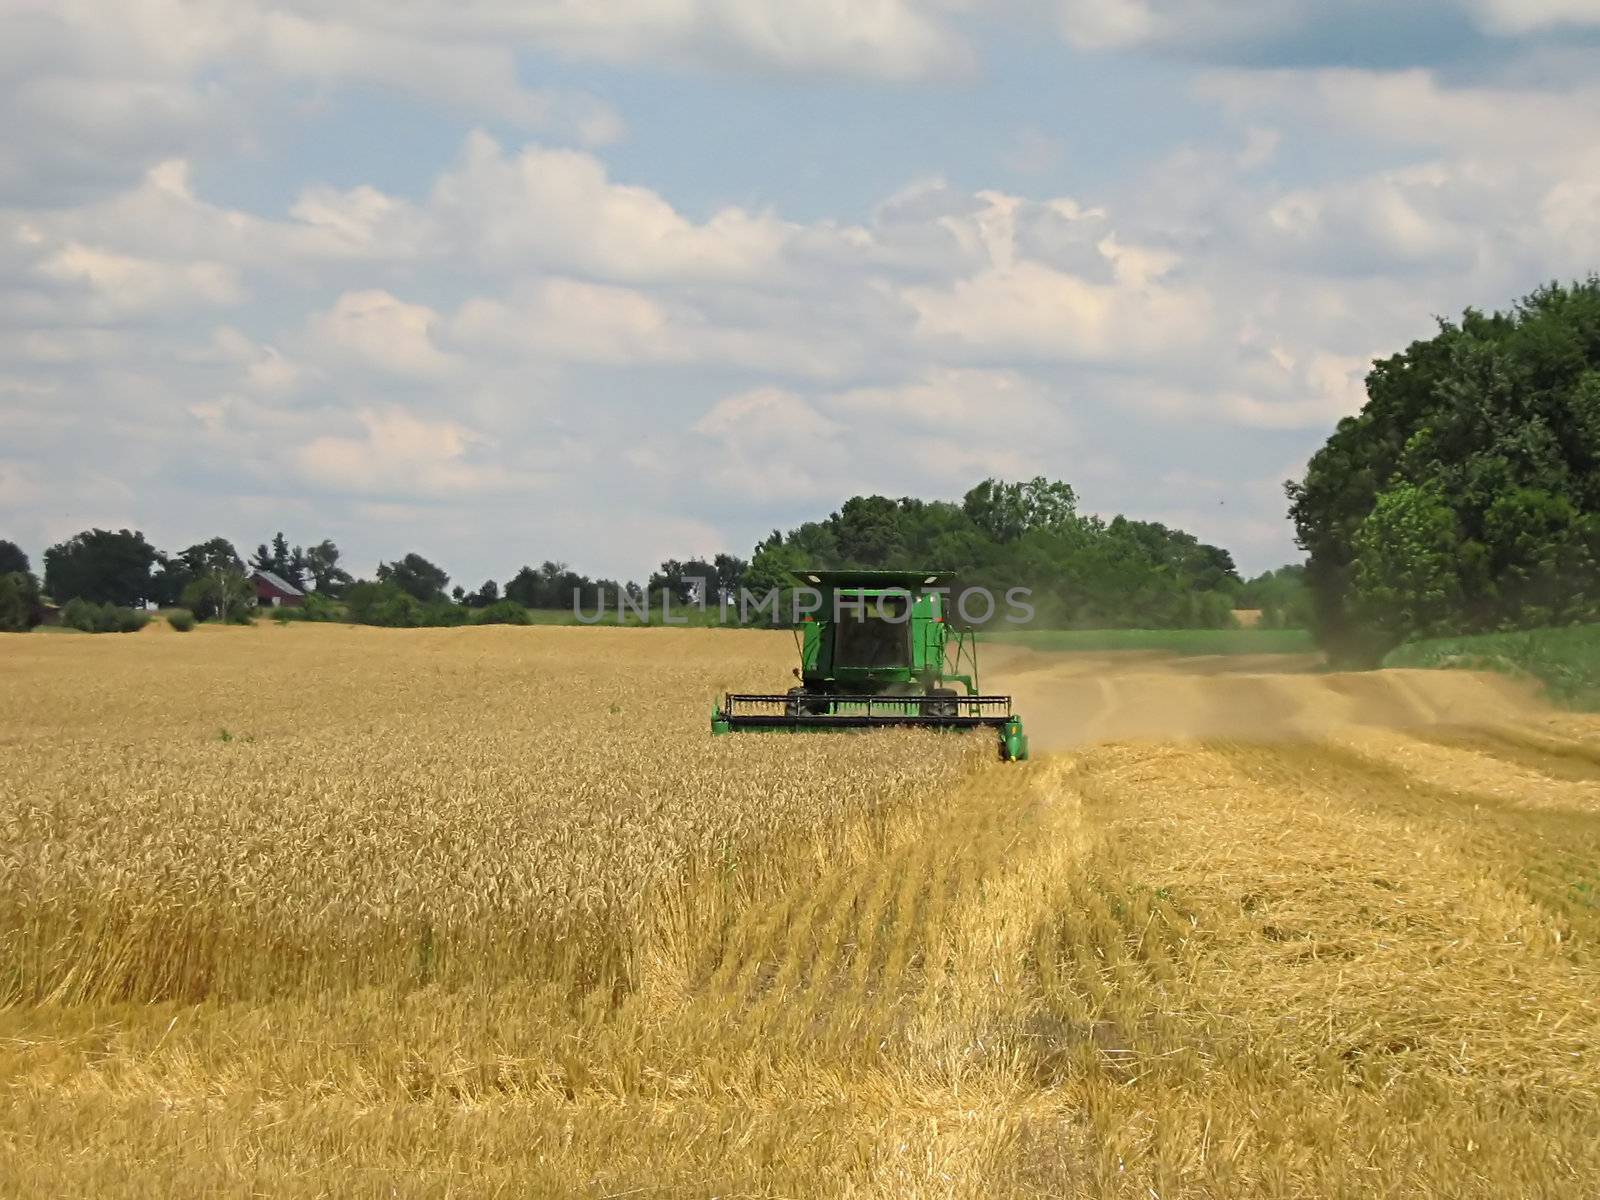 Crop Harvesting by llyr8